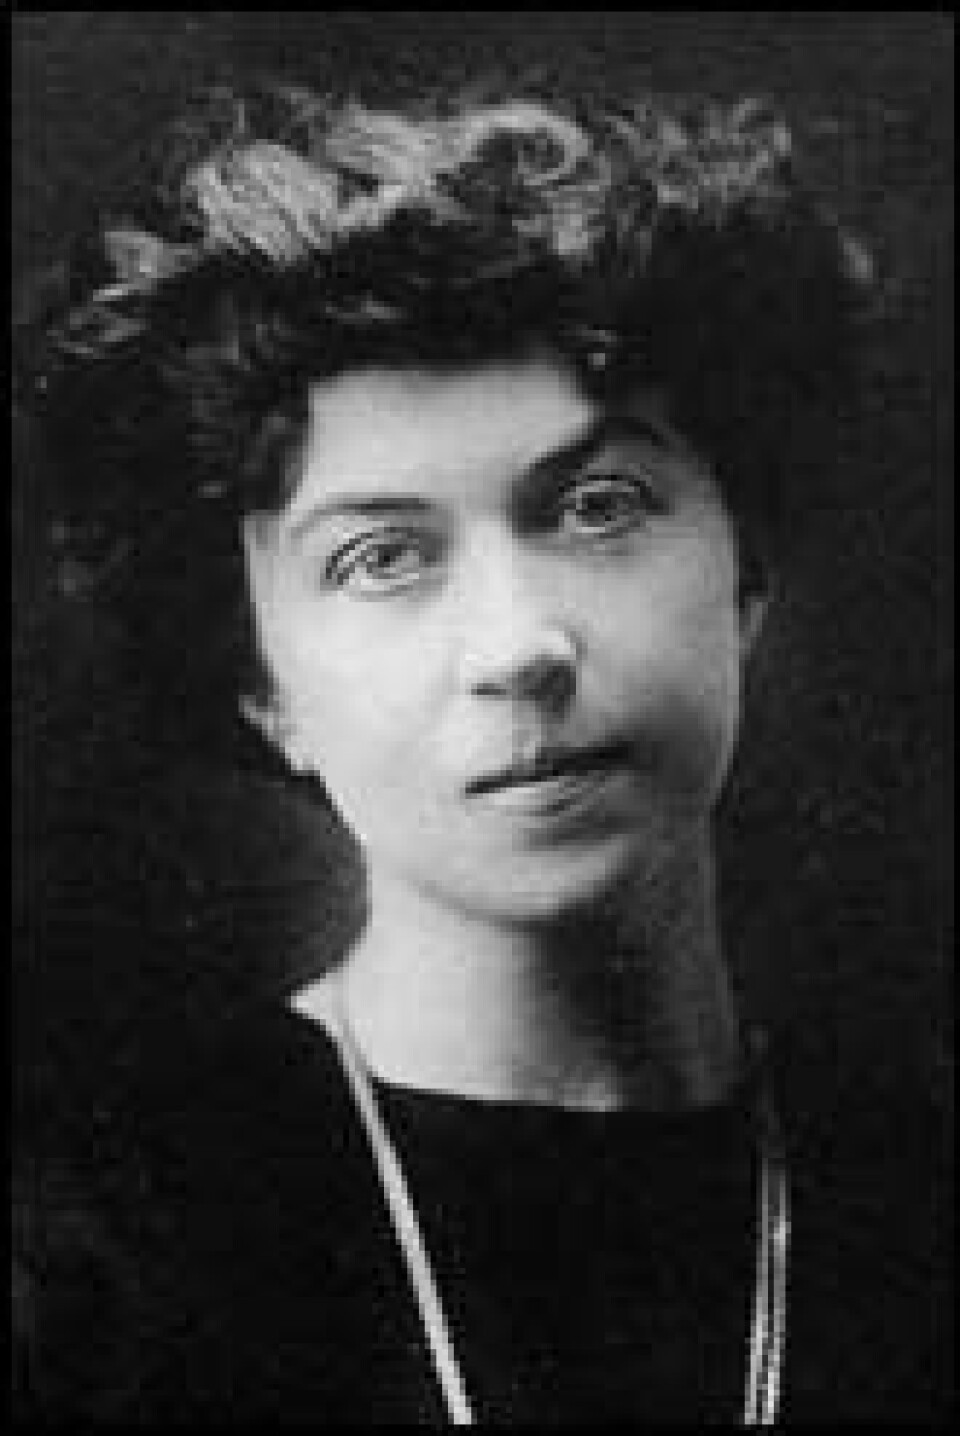 Aleksandra Kollontaj (1872-1952) spilte som sovjetisk utsending til Norge en viktig rolle i å bedre forbindelsen mellom de to landene. Kollontaj blir ofte nevnt som verdens første kvinnelige ambassadør. (Foto: Wikimedia Commons)